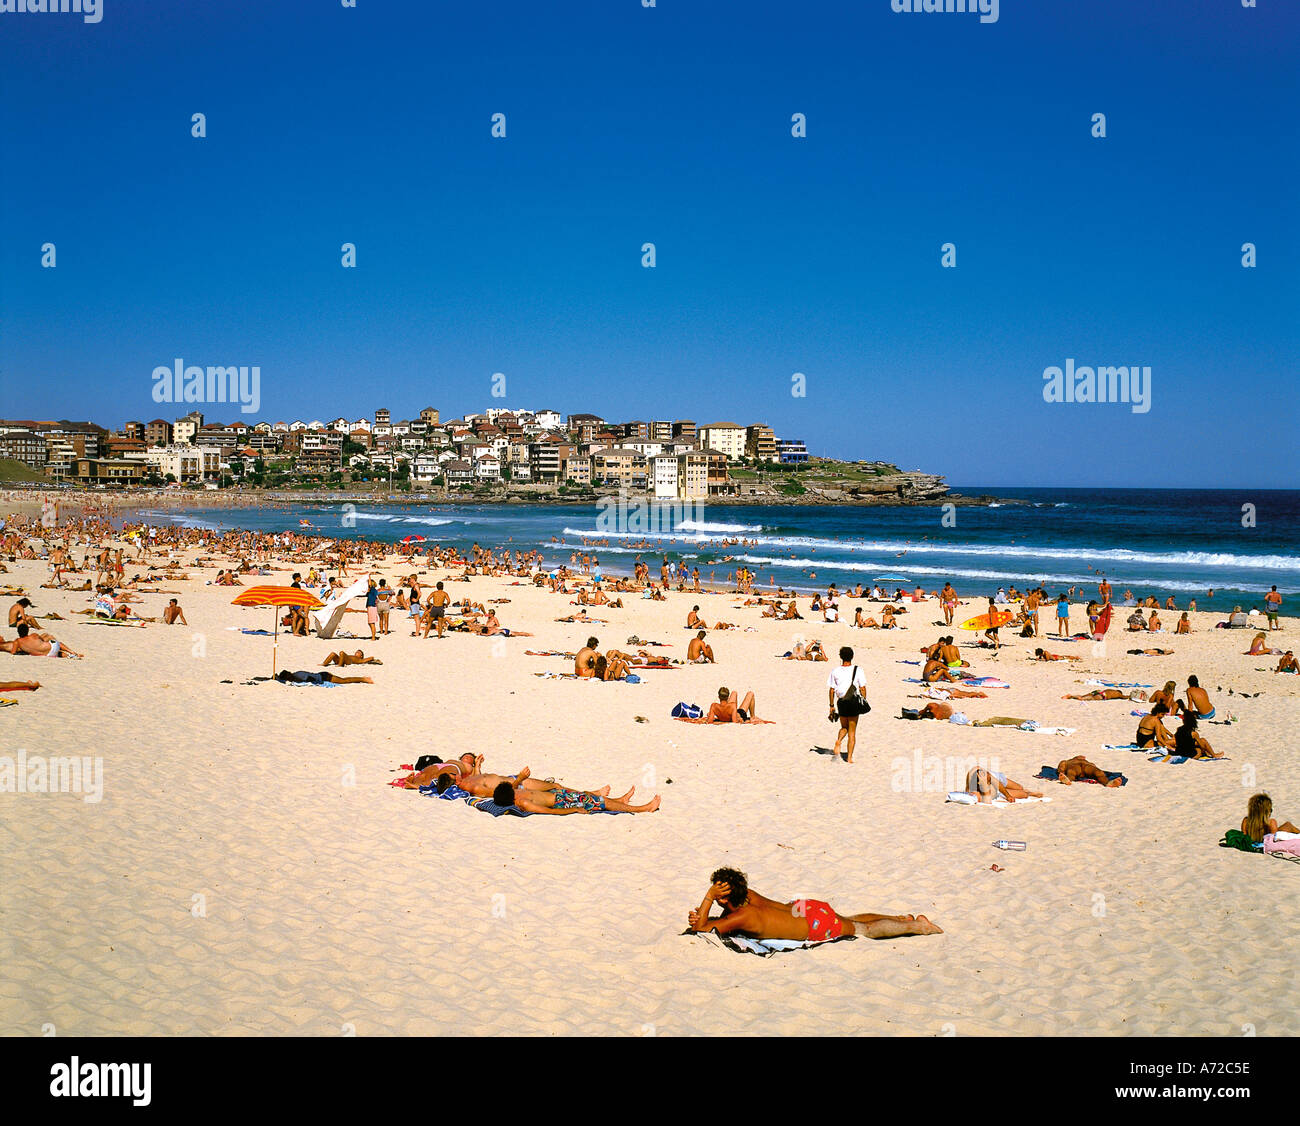 Les gens le bain de soleil sur la plage de Bondi Sydney New South Wales Australie Banque D'Images